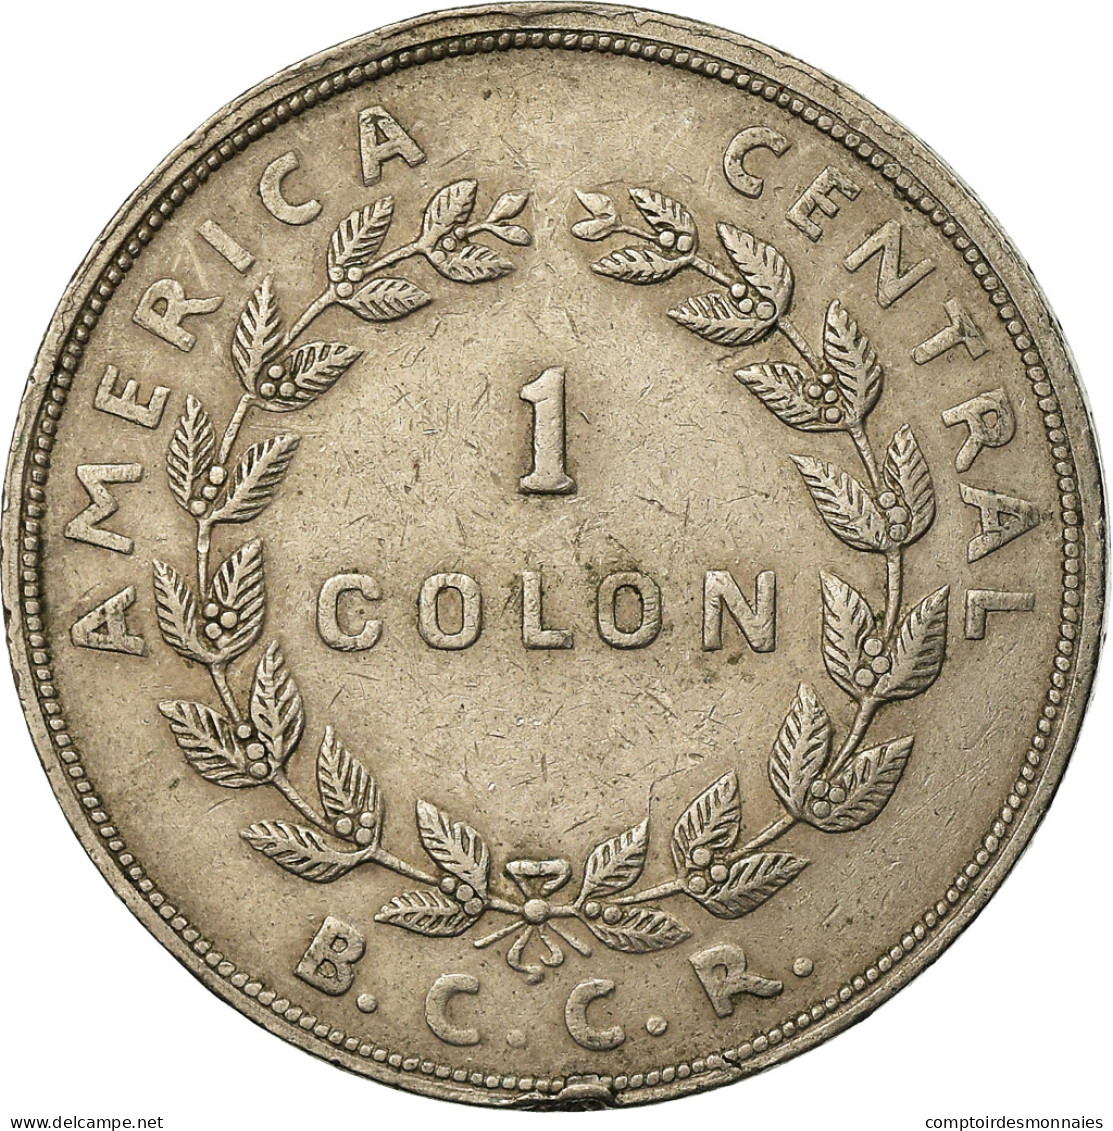 Monnaie, Costa Rica, Colon, 1965, TTB, Copper-nickel, KM:186.2 - Costa Rica